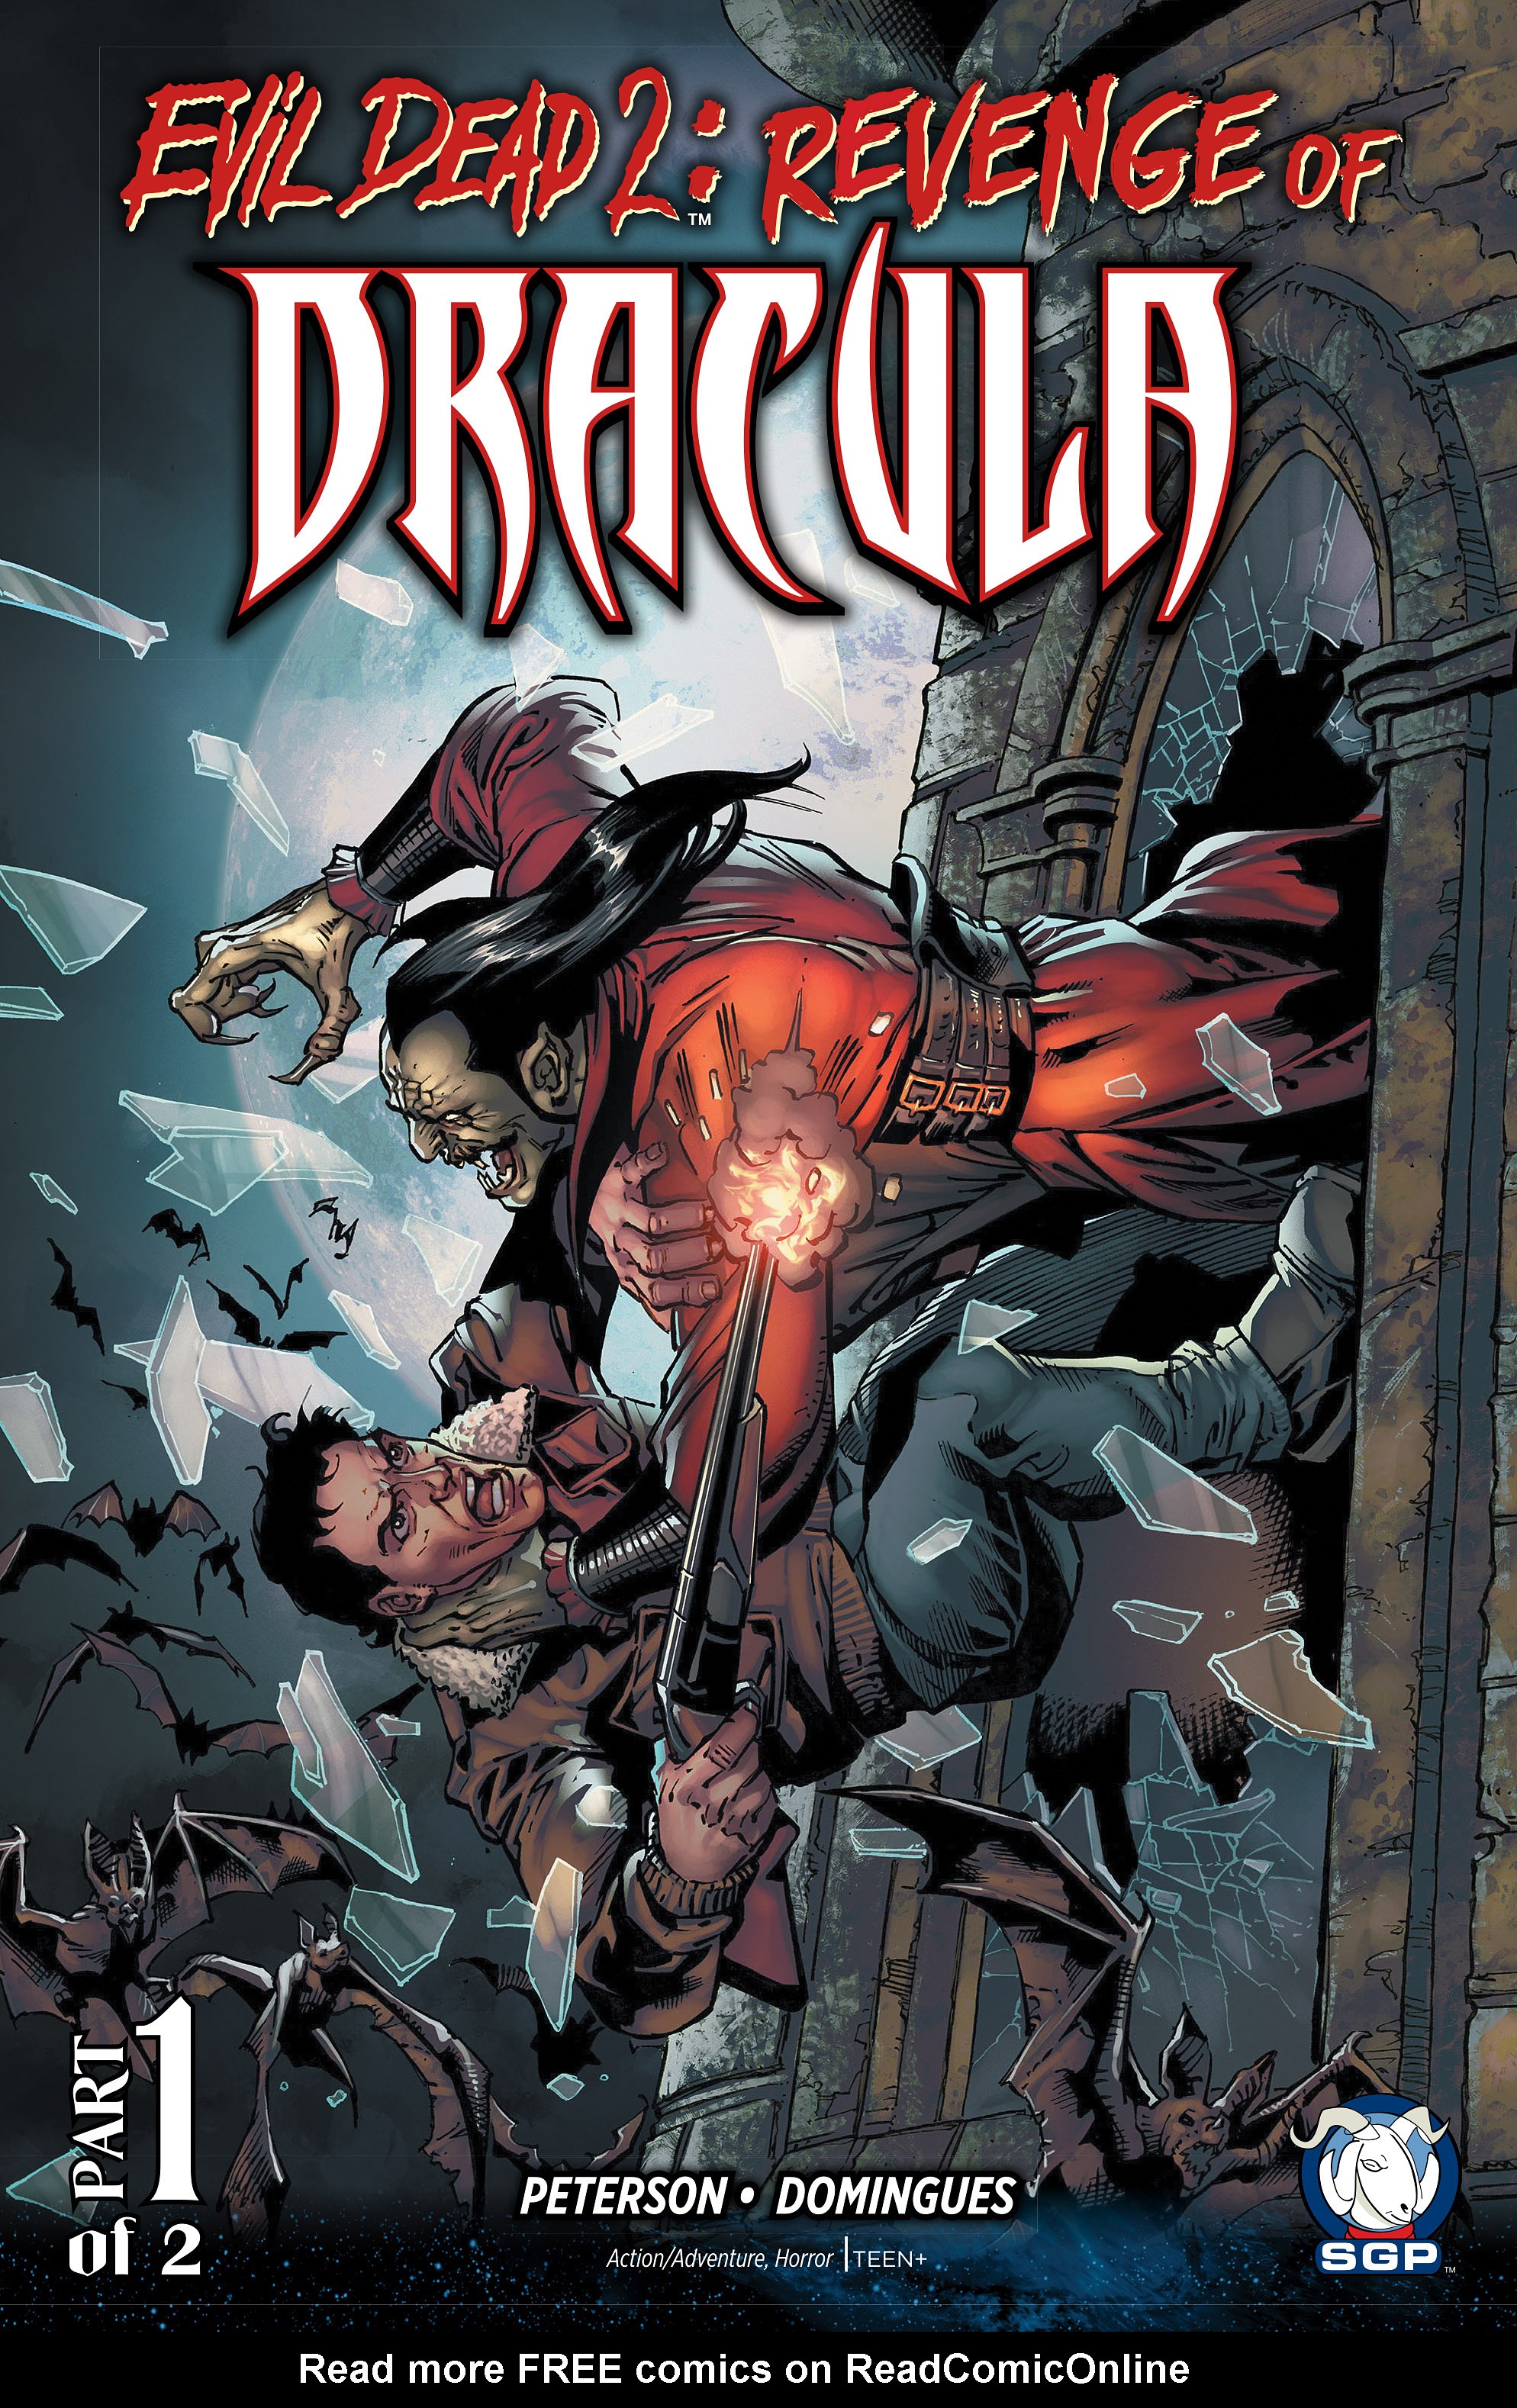 Read online Evil Dead 2: Revenge of Dracula comic -  Issue #1 - 1